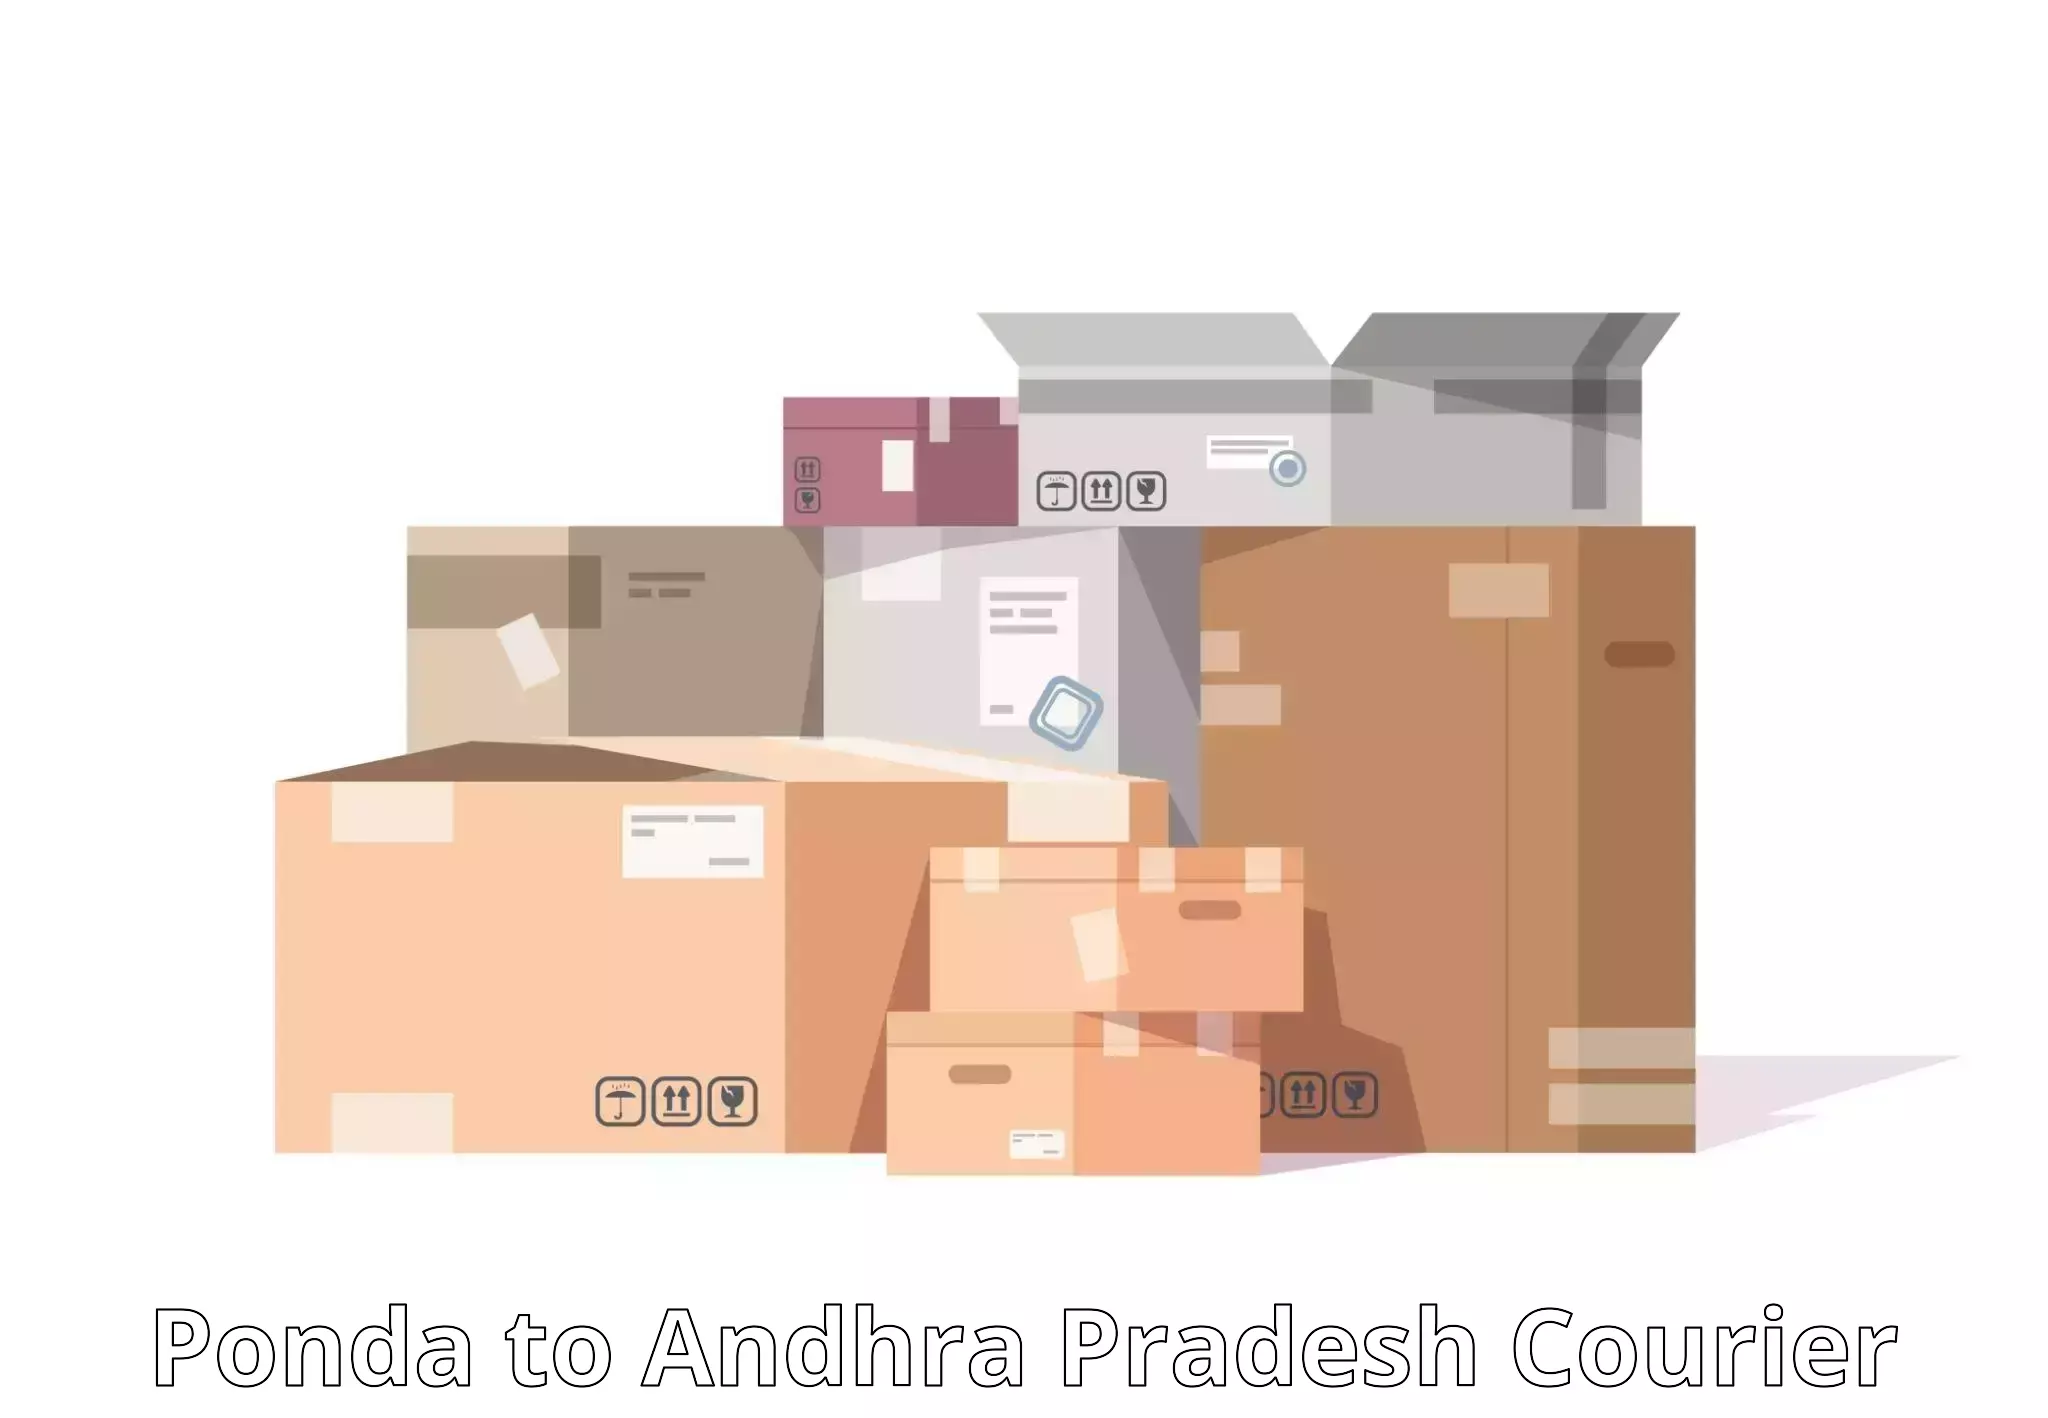 Efficient courier operations Ponda to Gajapathinagaram